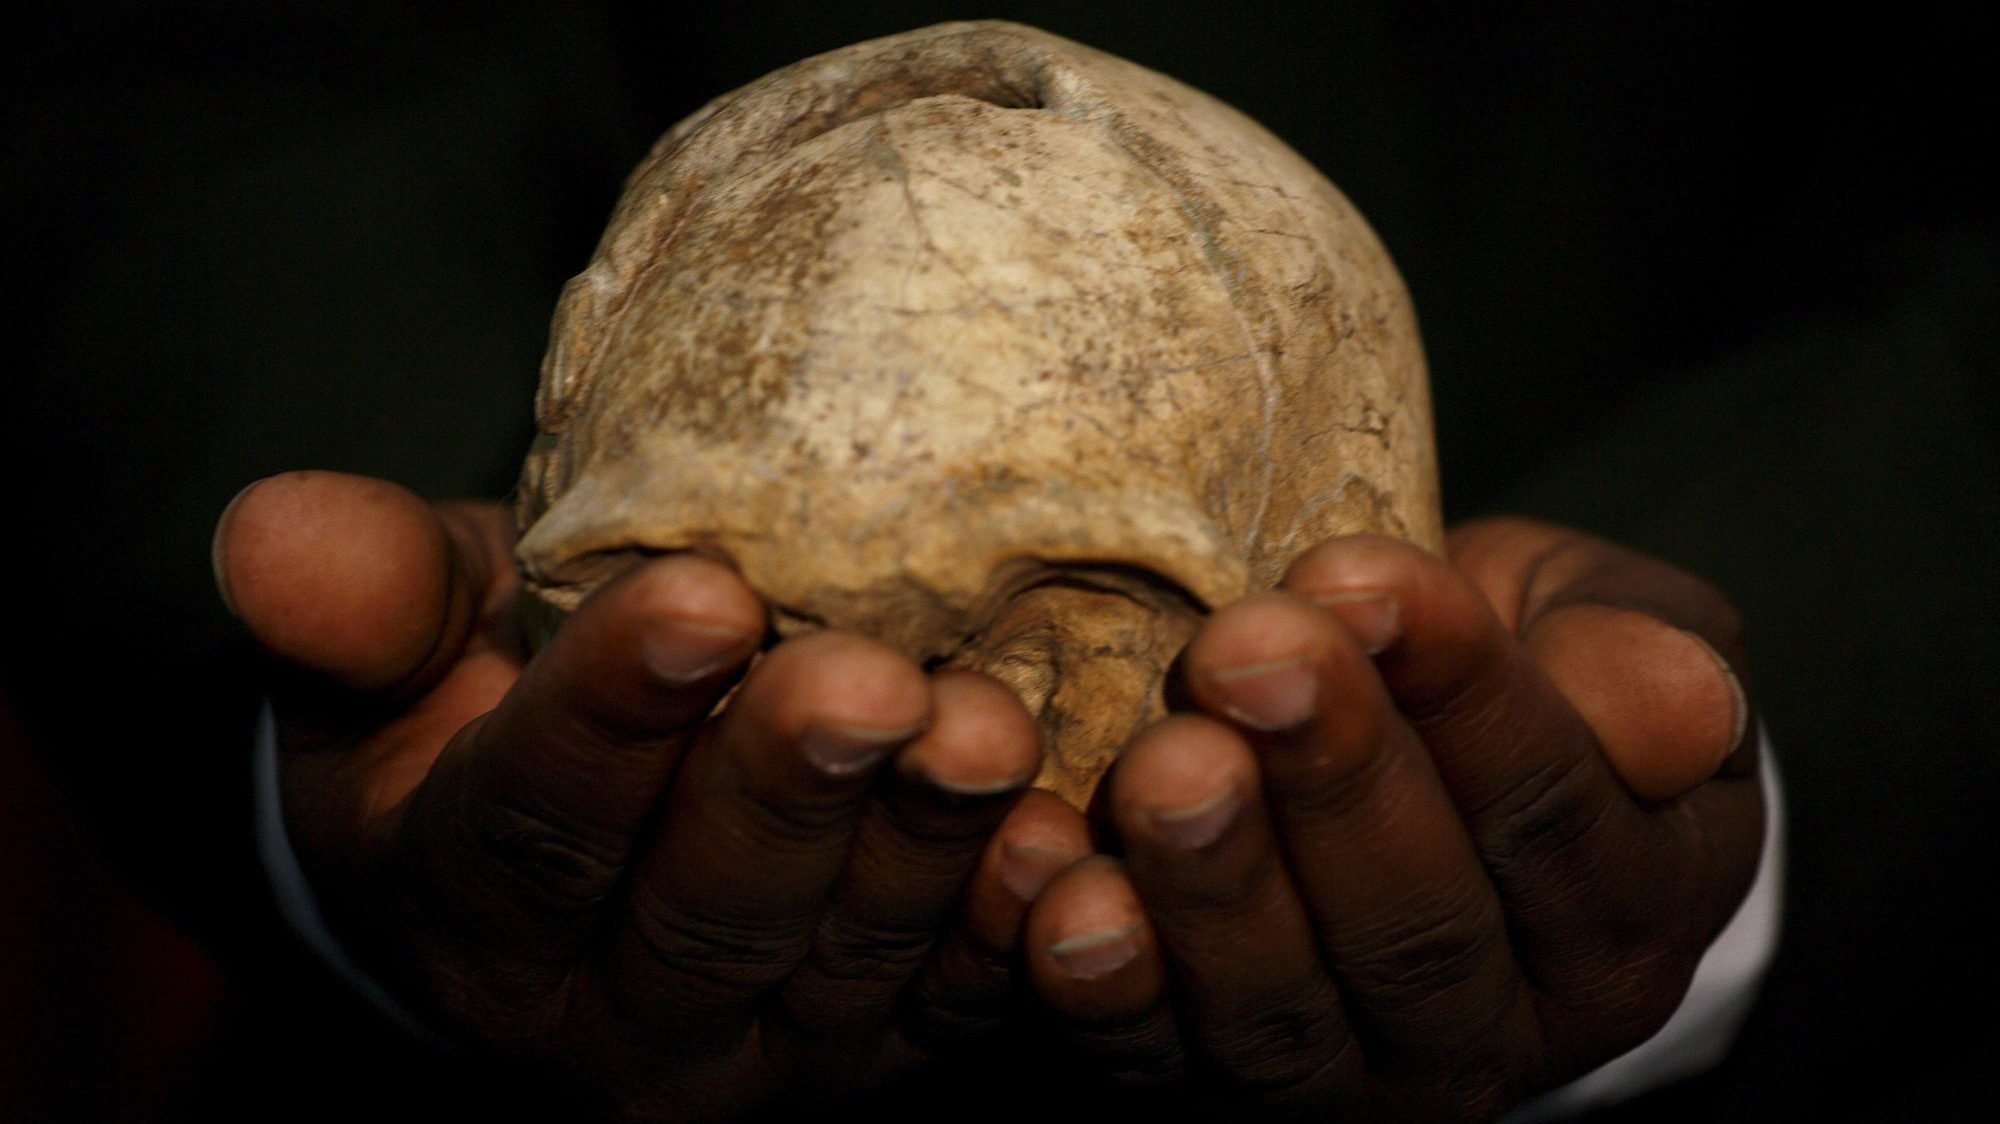 Um novo fóssil descoberto desafia a história da evolução humana. Um crânio descoberto em 2000 perto do lago Turkana, no Quénia.